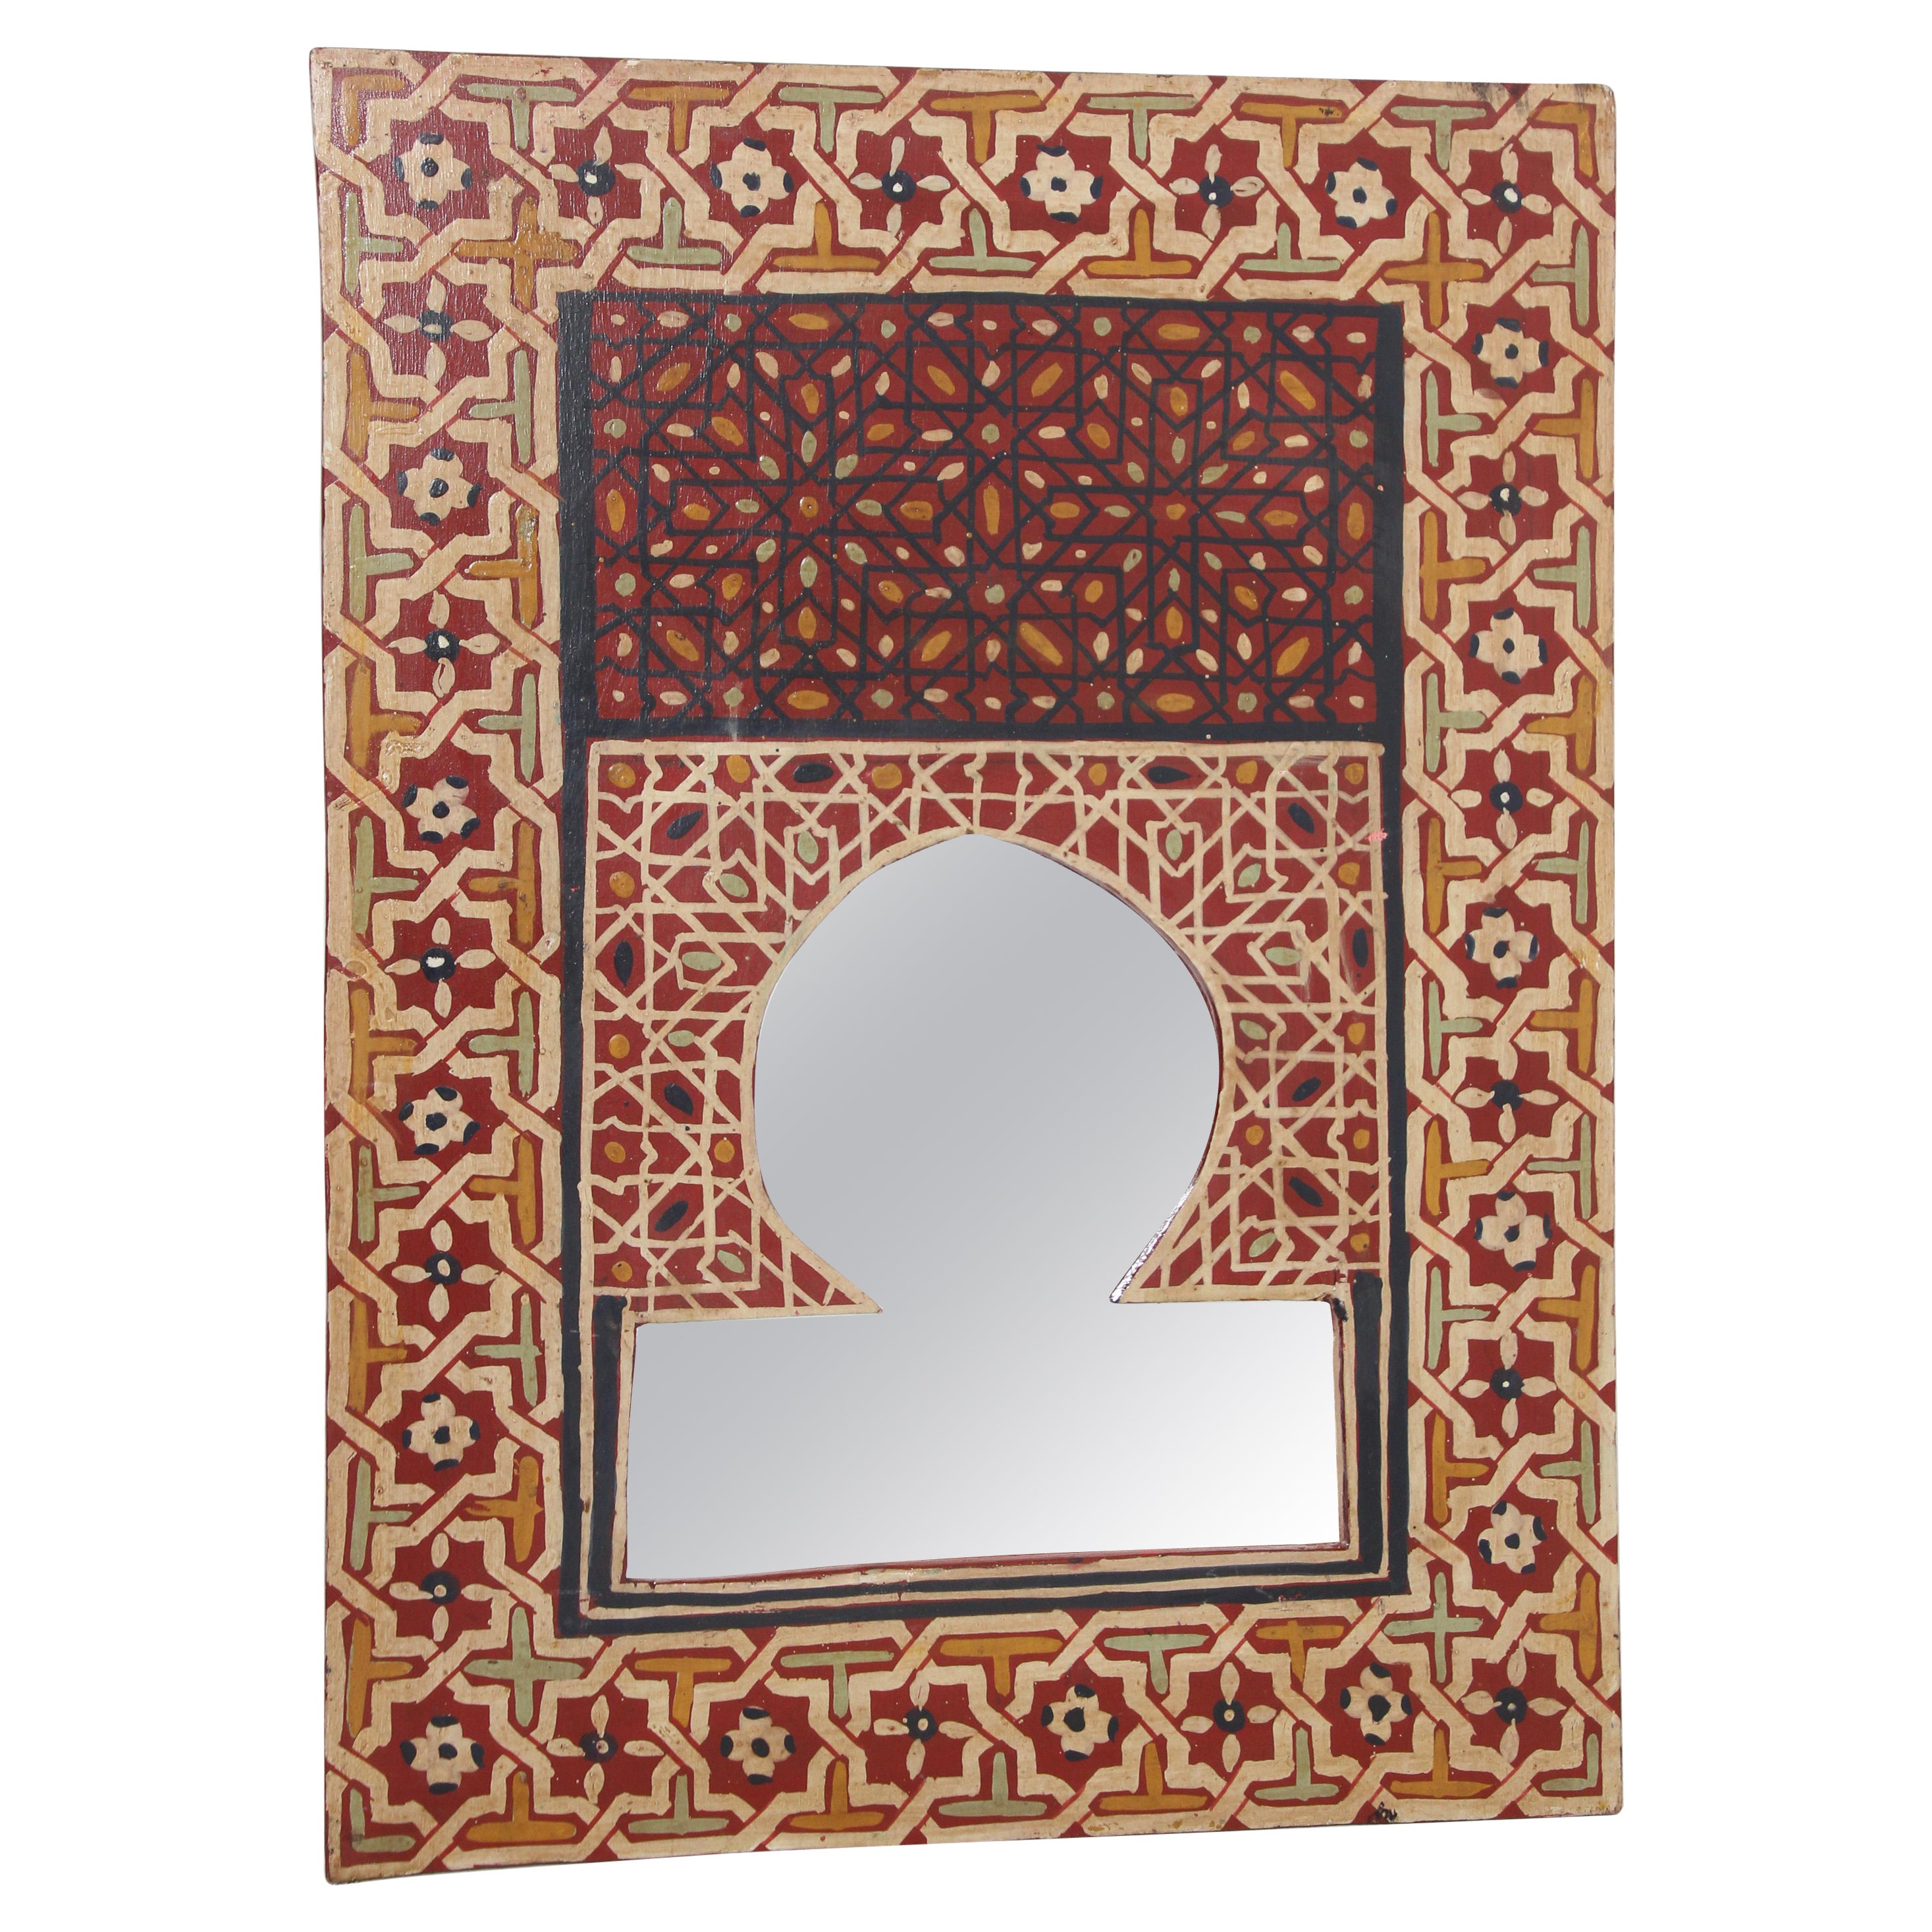 Marokkanischer Vintage-Spiegel, handbemalt mit rotem maurischem Design